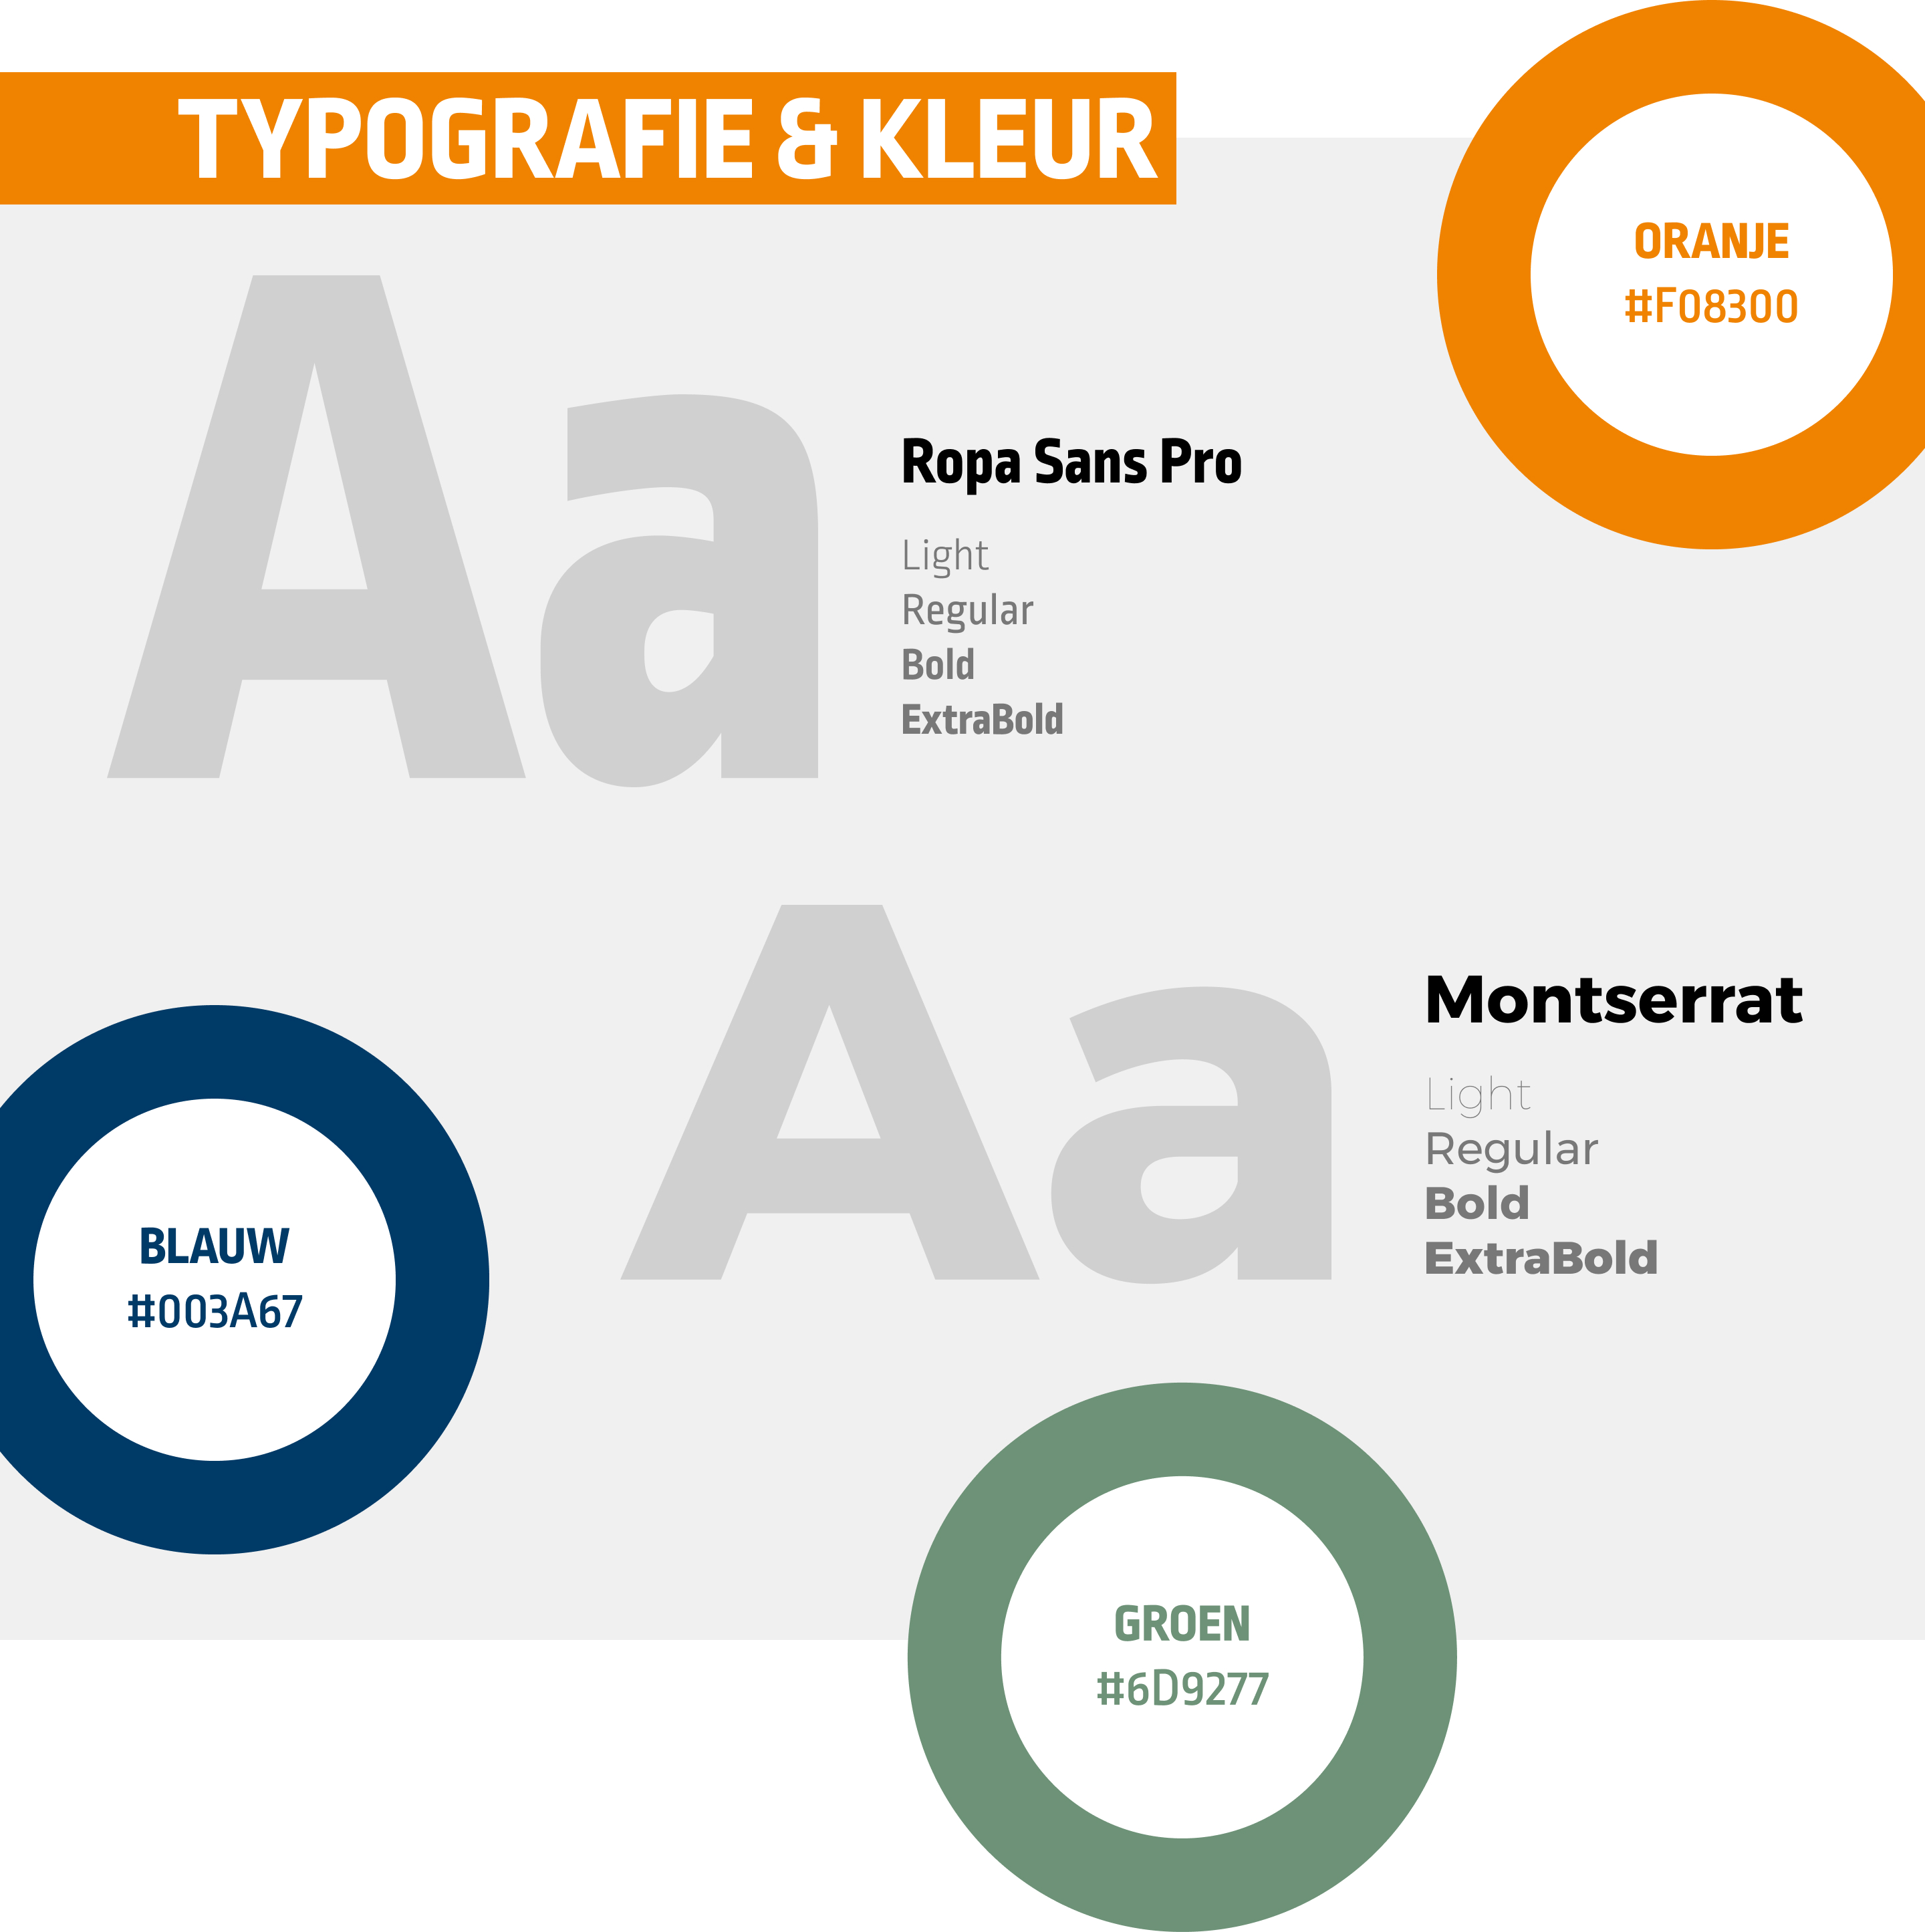 Port of Zwolle - Typografie & Kleuren